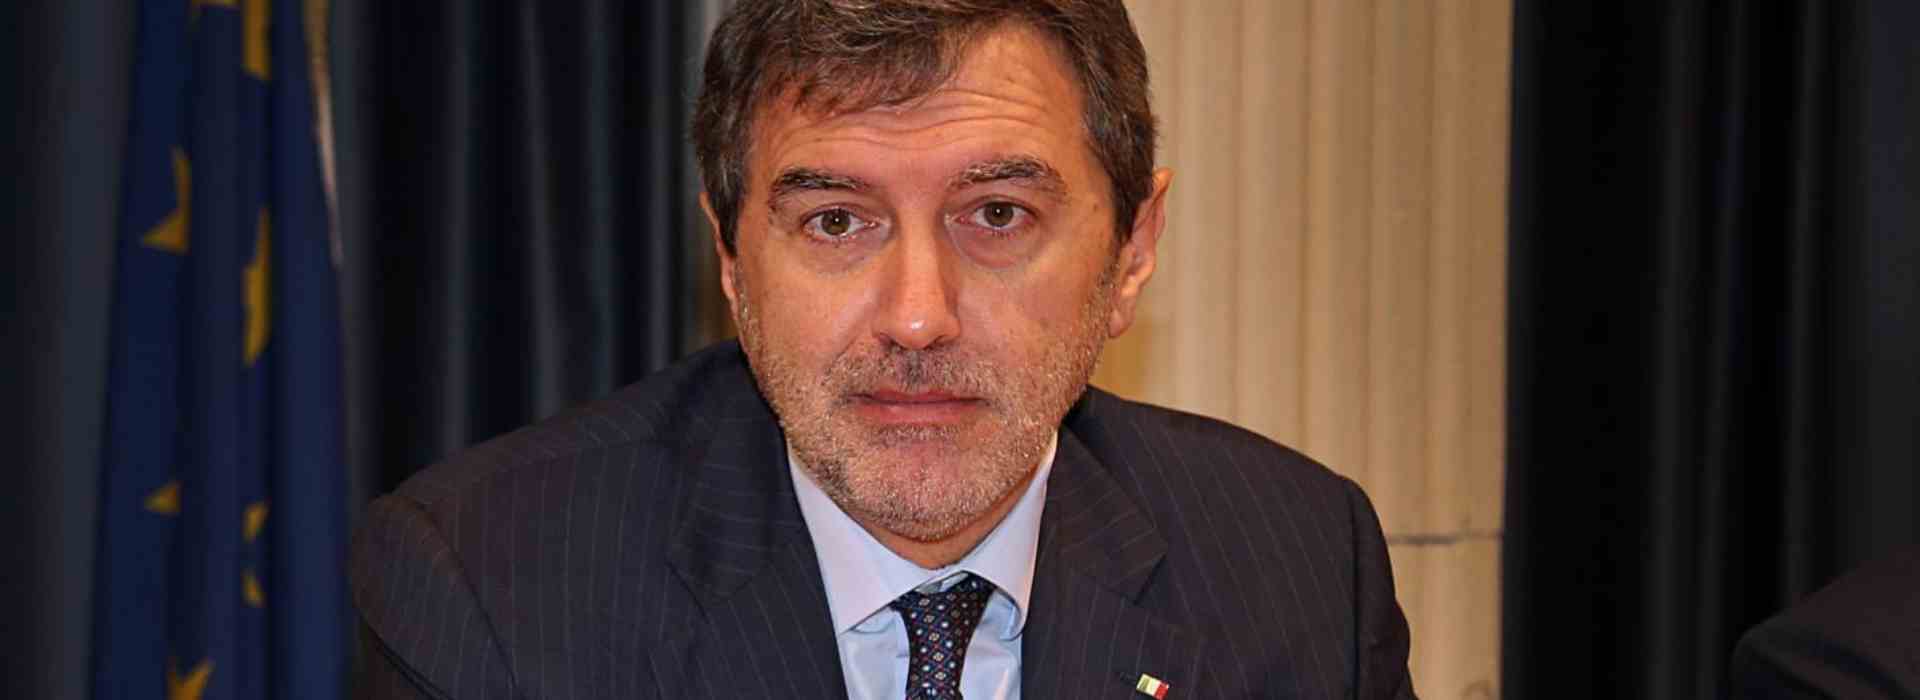 Marco Marsilio, governatore d'Abruzzo